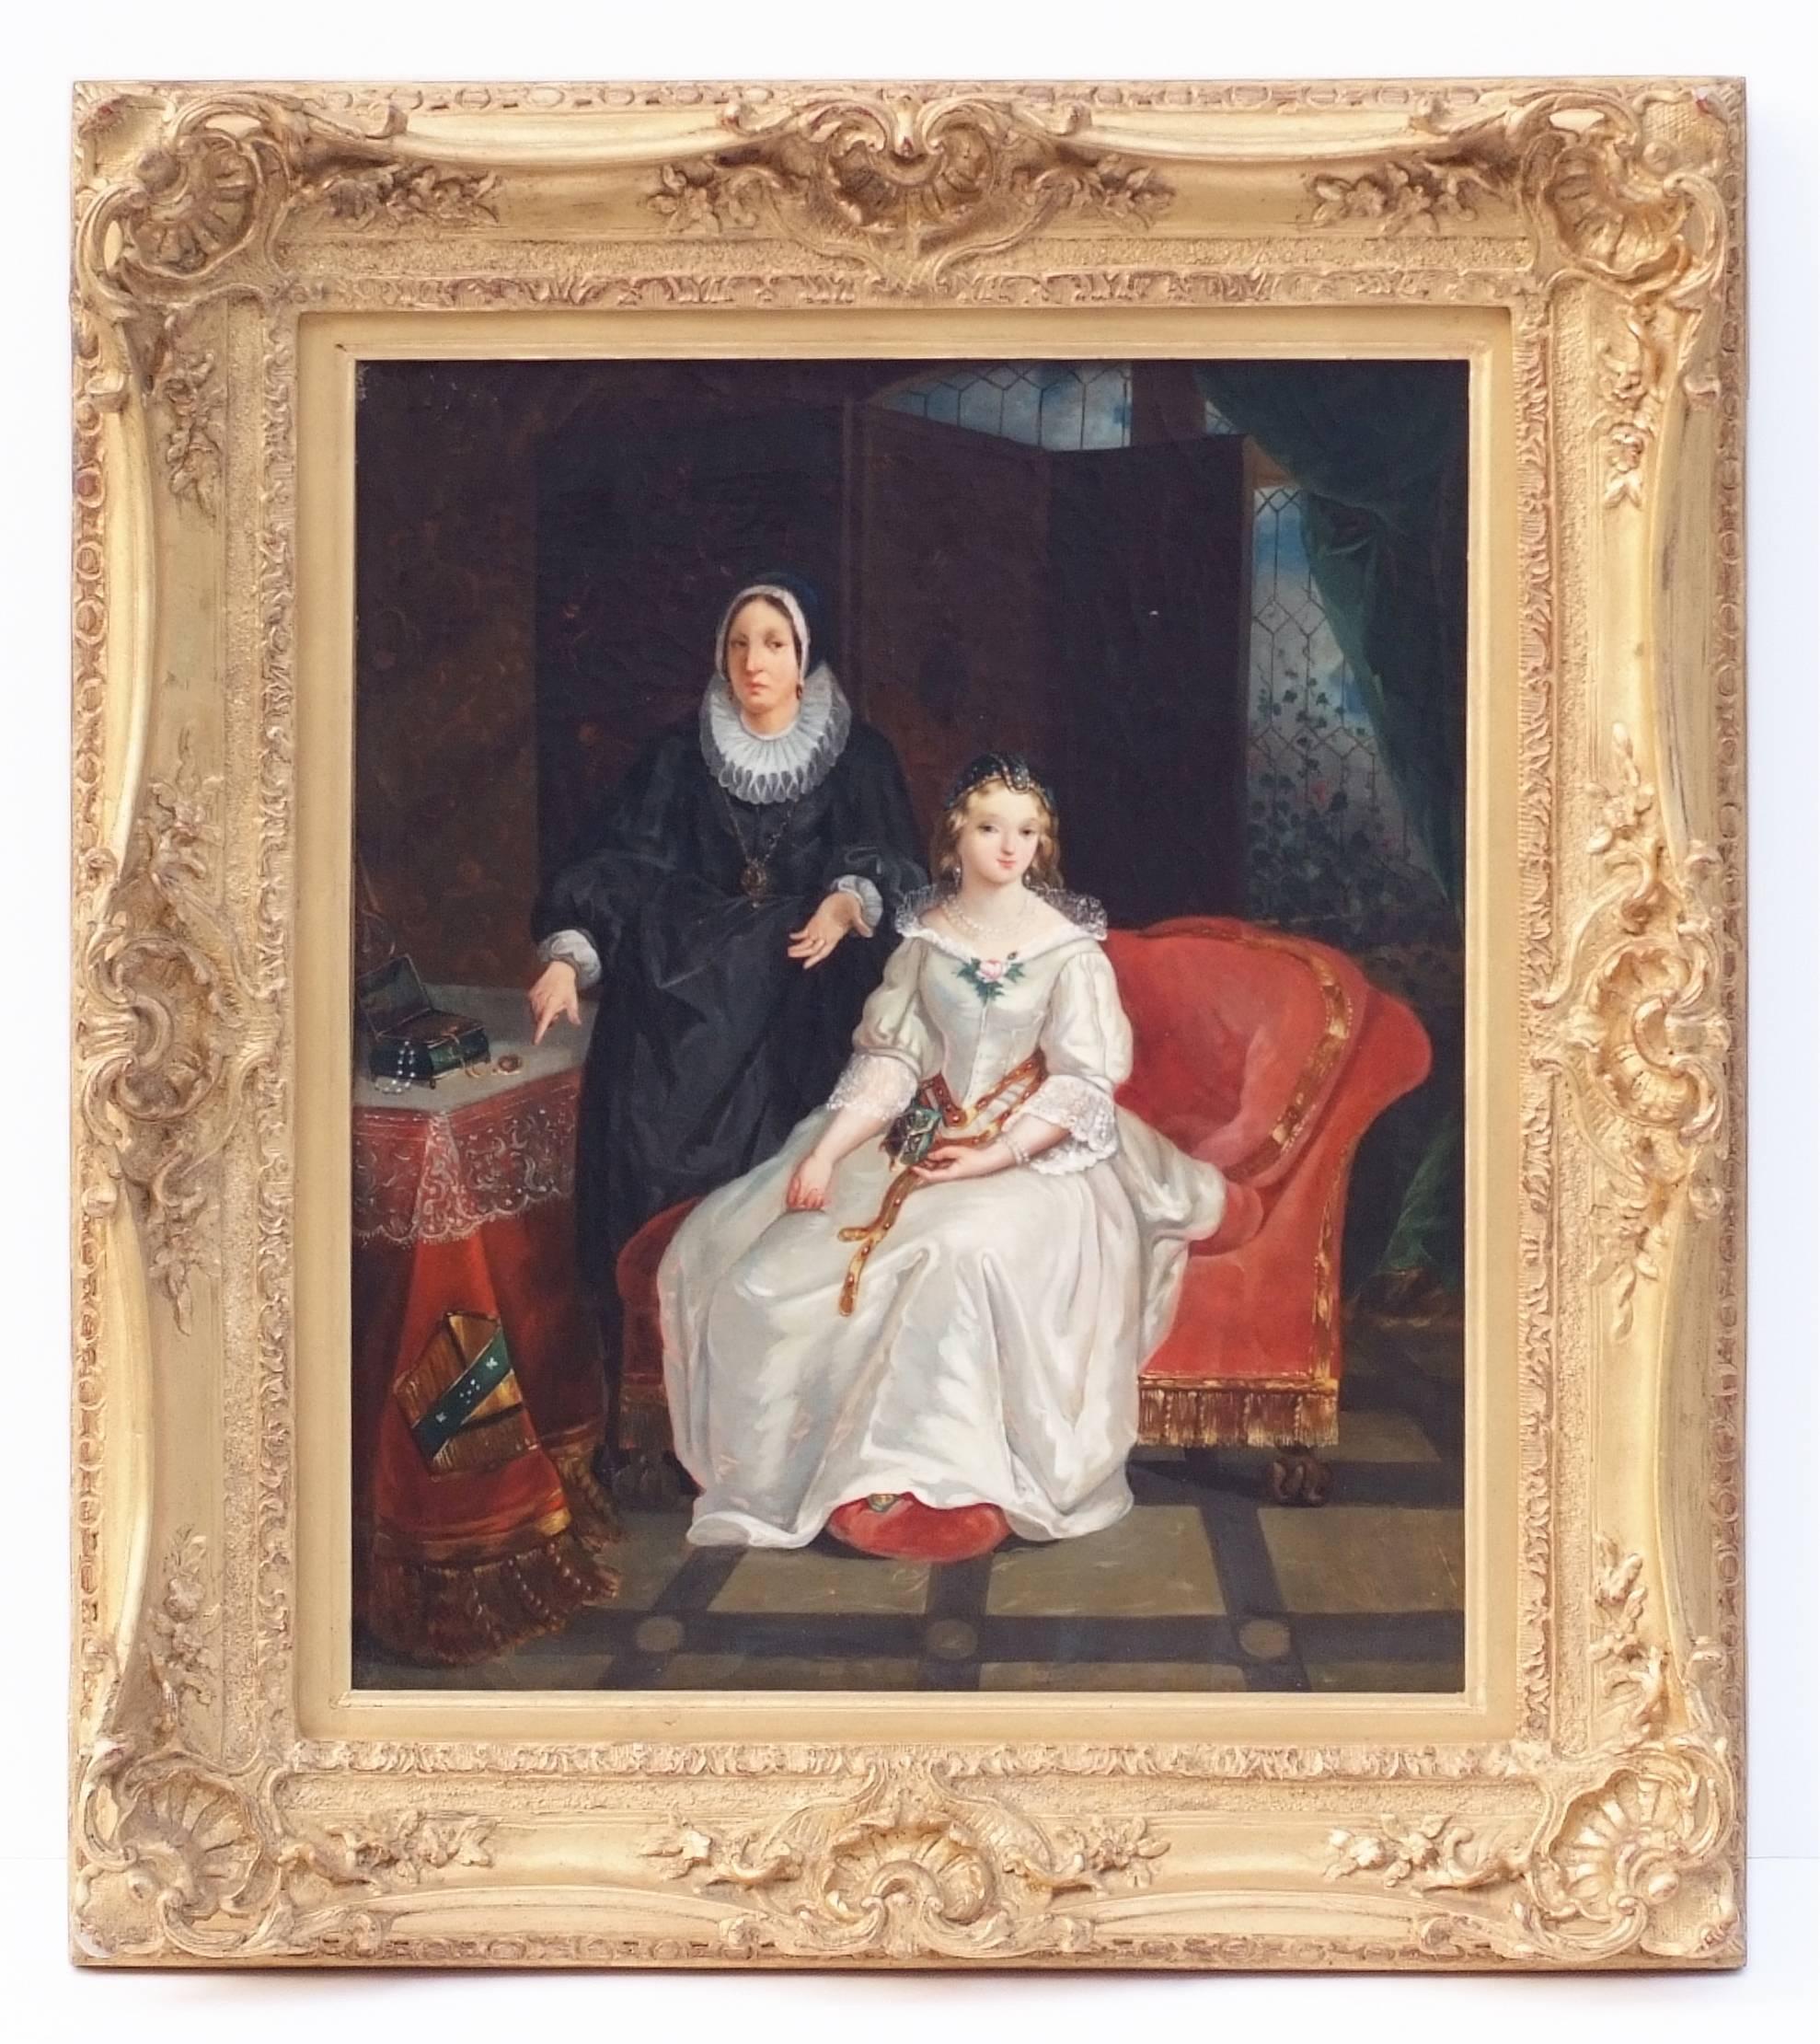 François Xavier FABRE   Portrait Painting - Painting 19th century  French School Genre Scene Interior Portrait